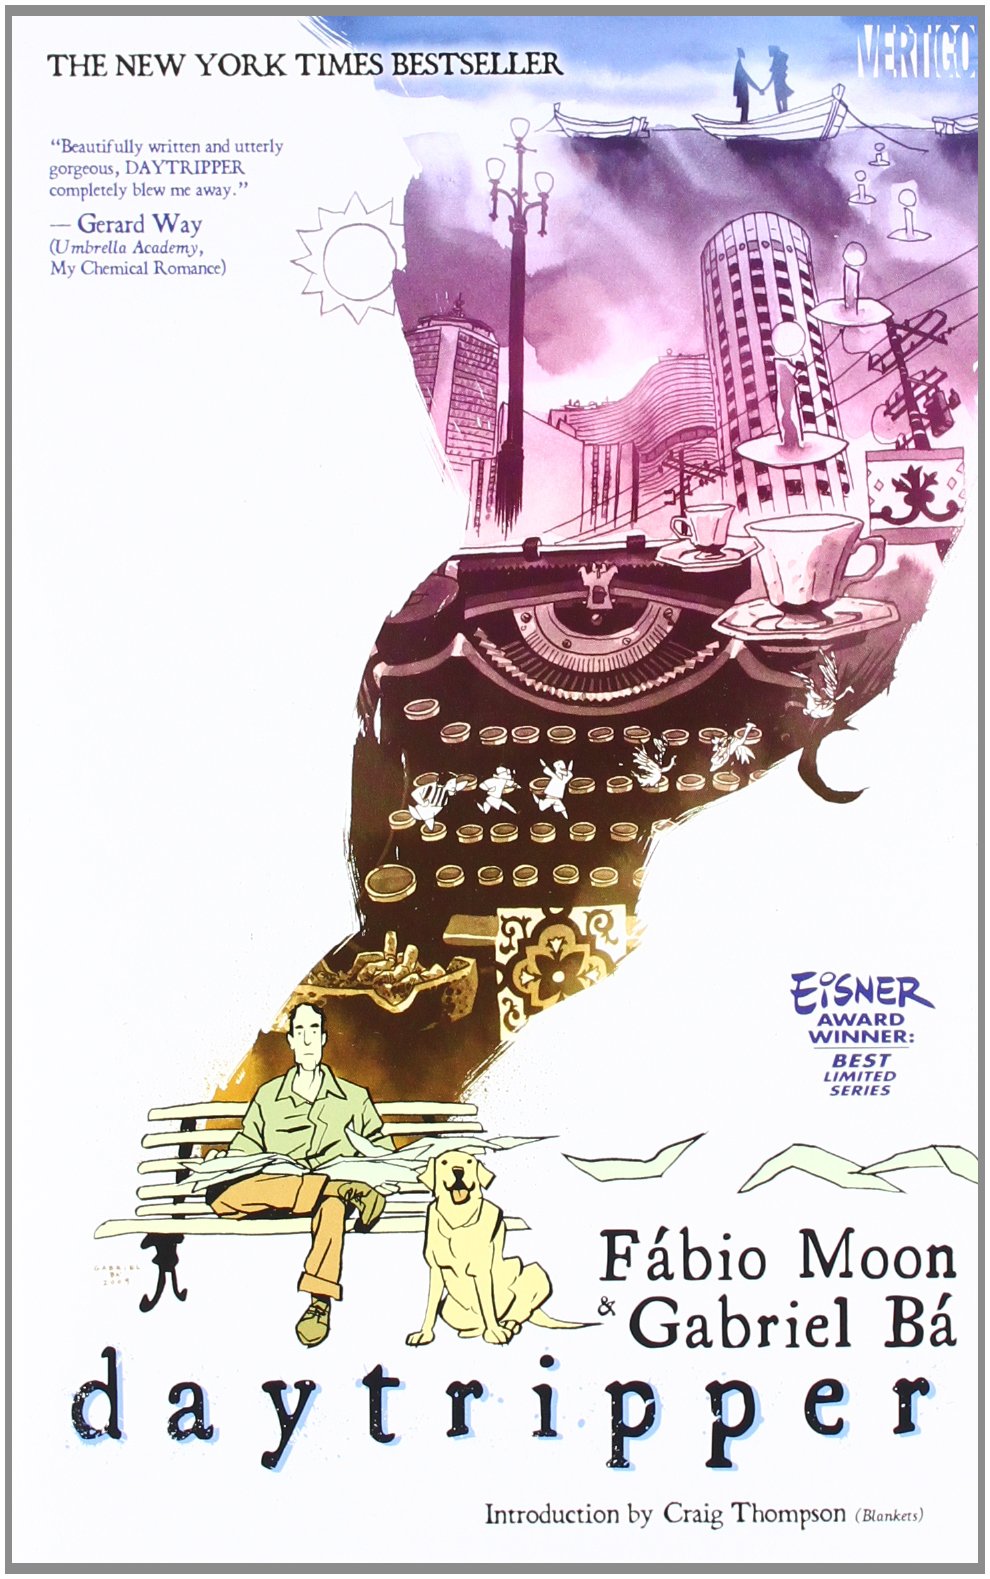 Daytripper by Fábio Moon and Gabriel Bá, introduction by Craig Thompson -  BookDragon